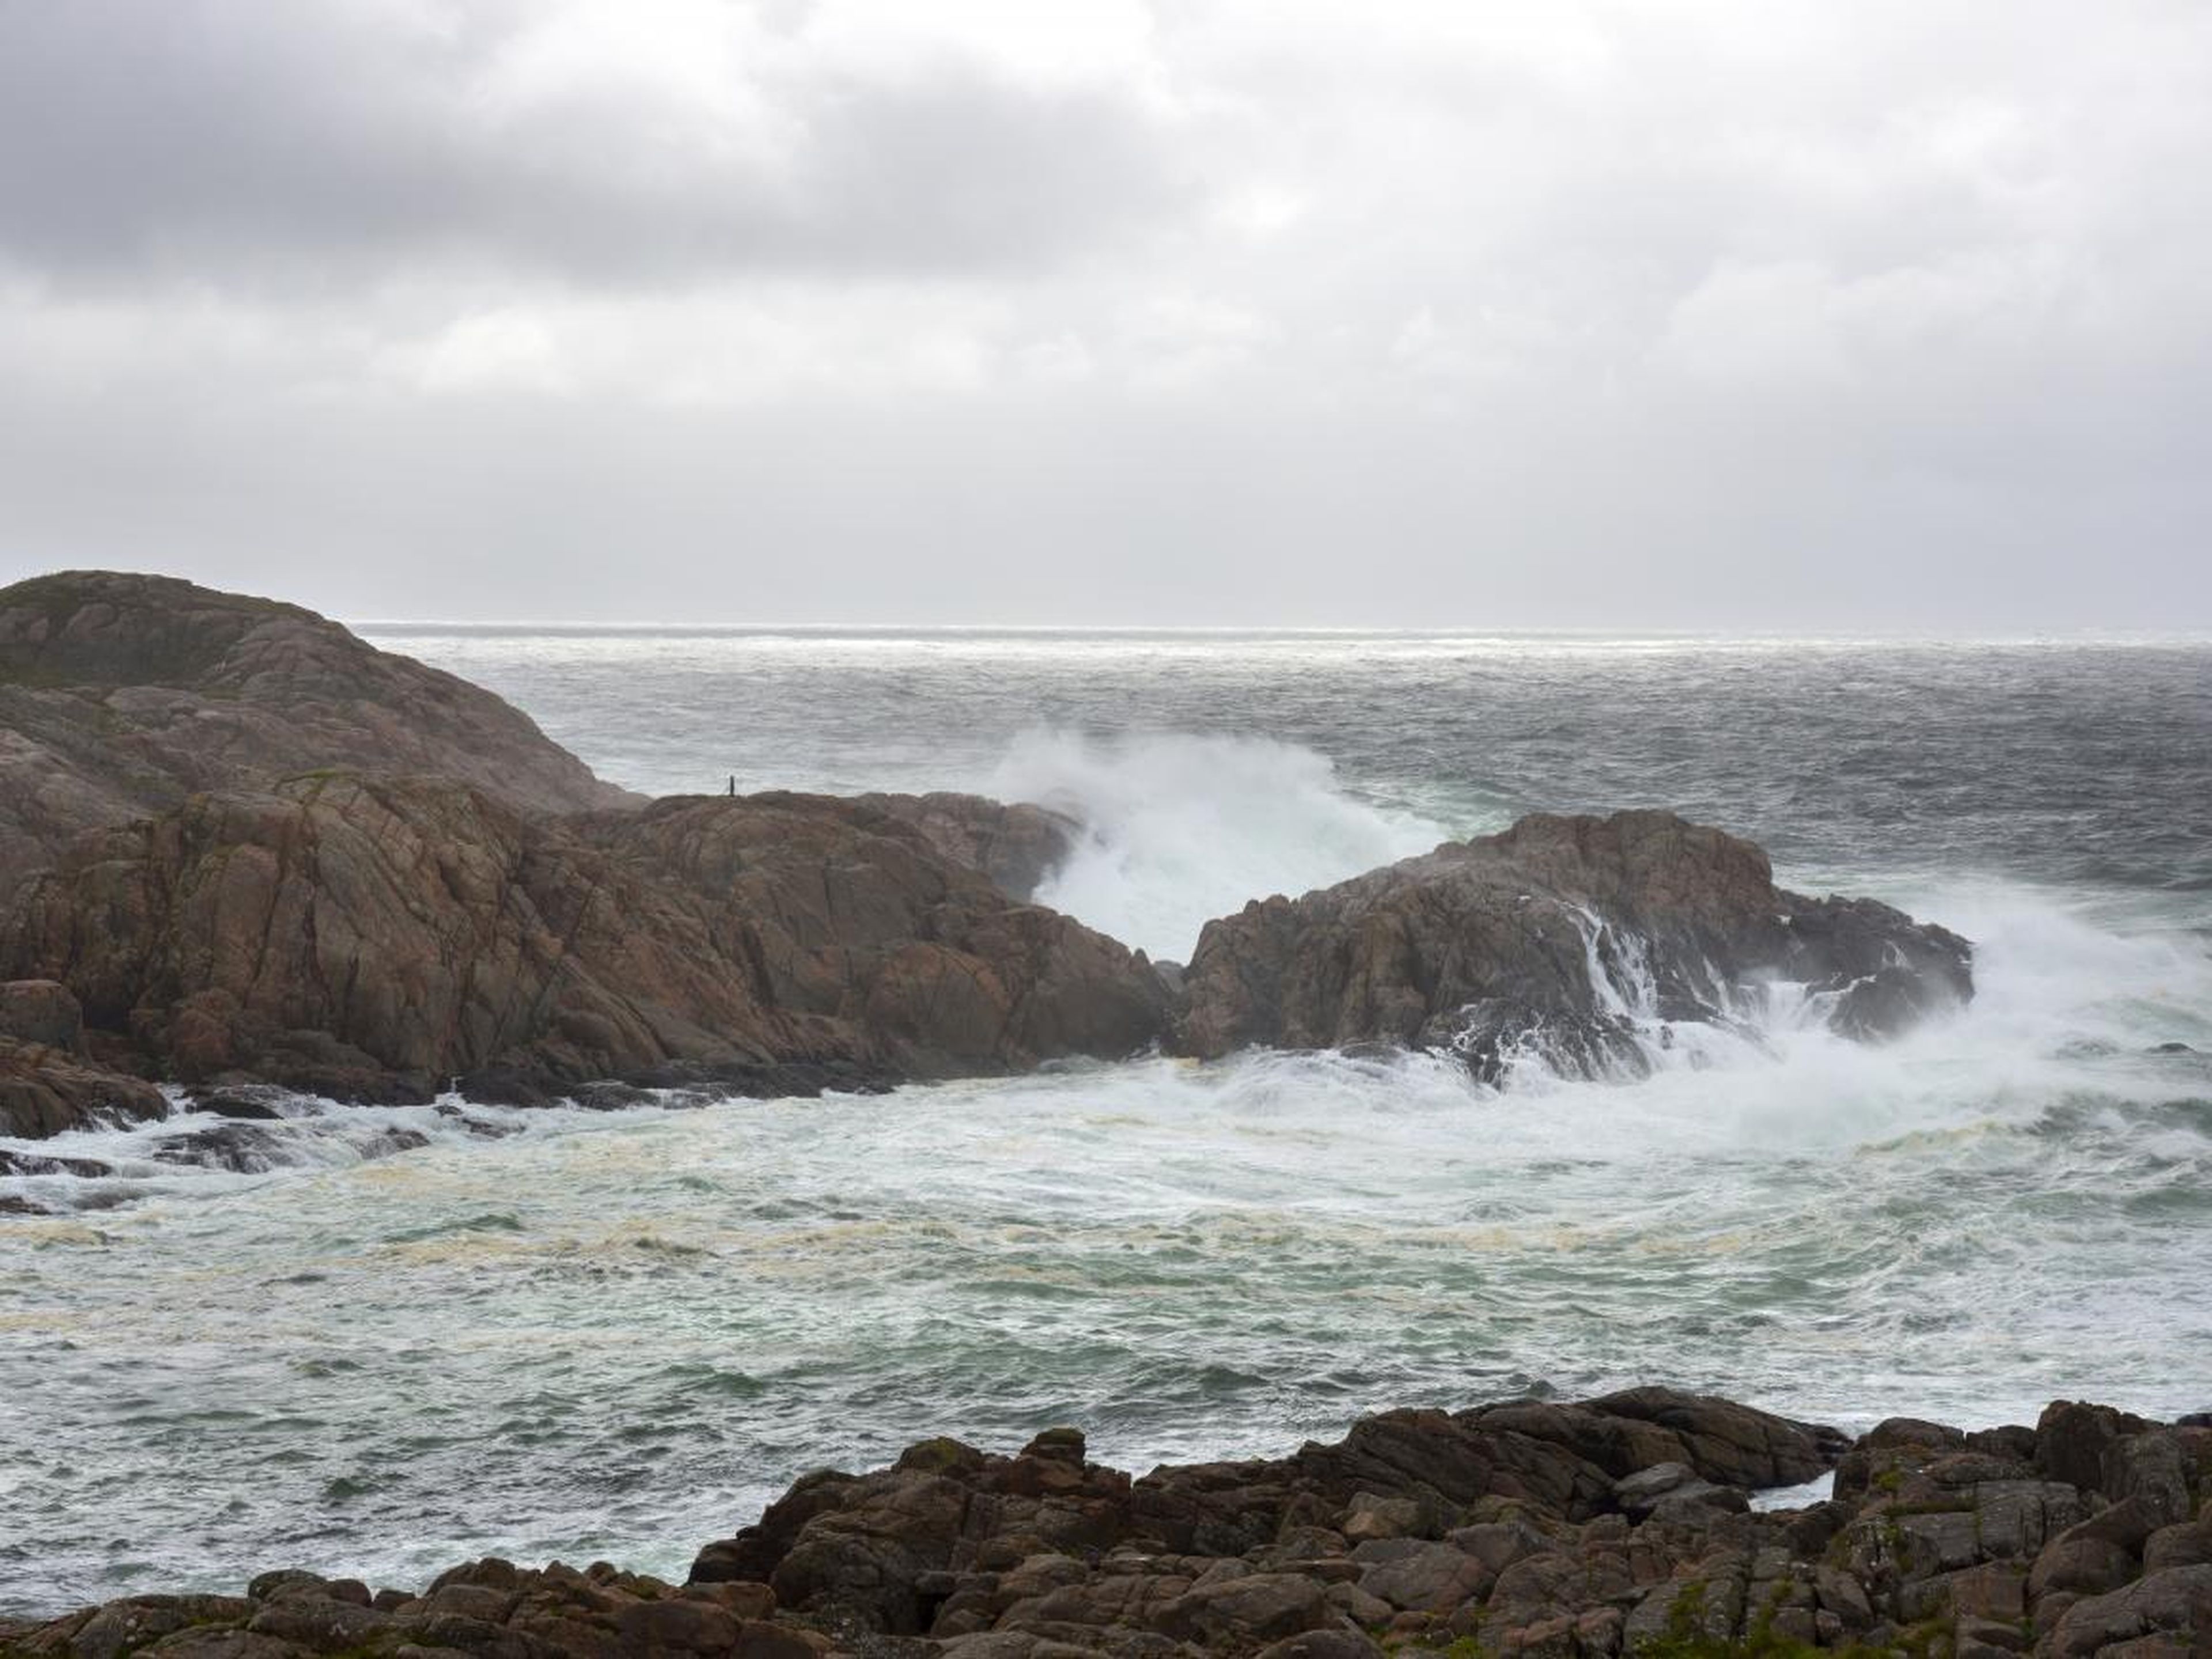 Stormy seas in Lindesnes, Norway.